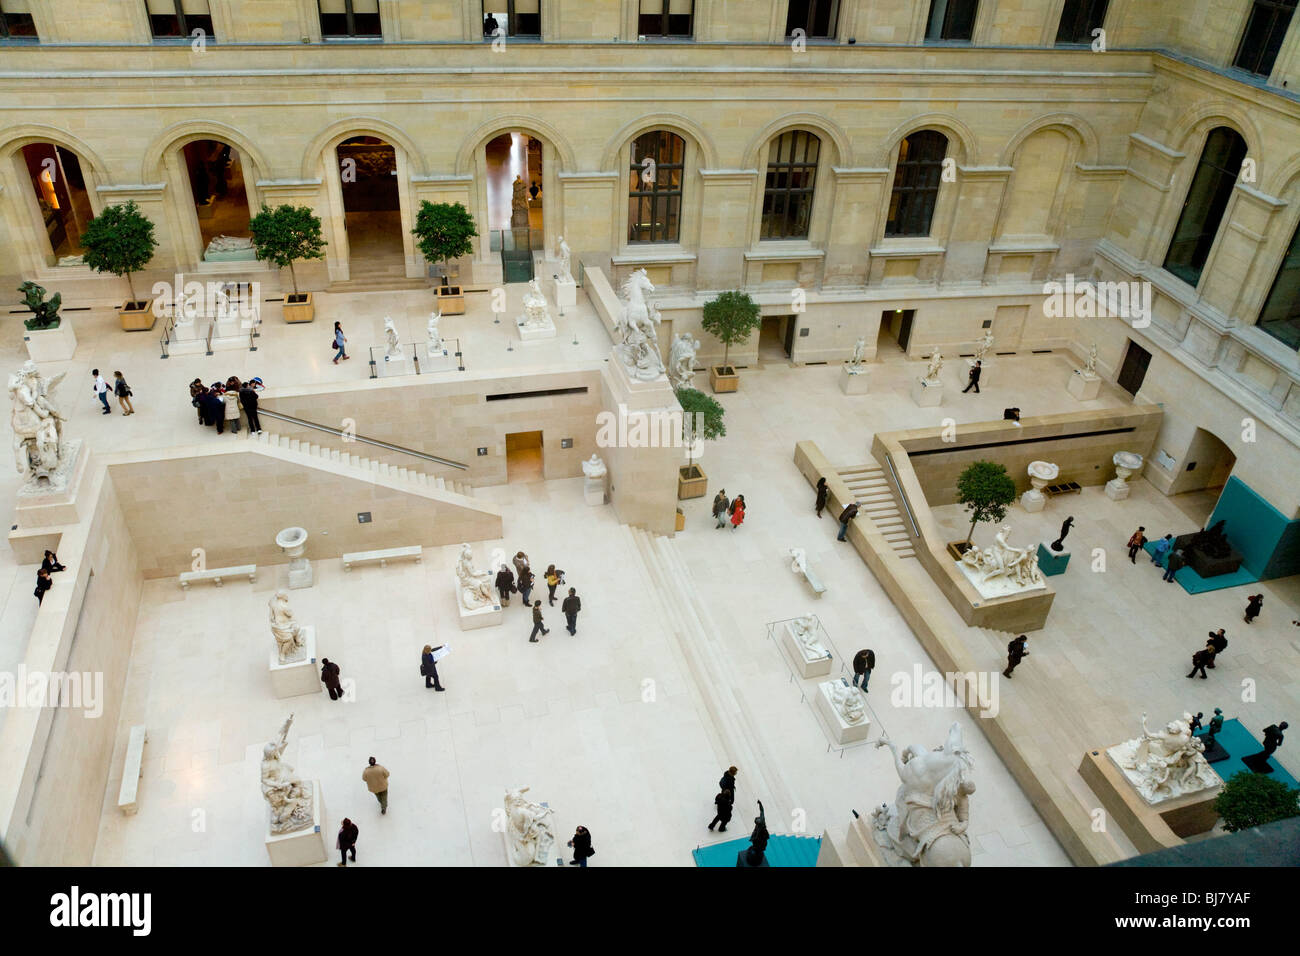 Cour intérieure du musée du Louvre / Musée / Palais du Louvre. Paris, France. Banque D'Images